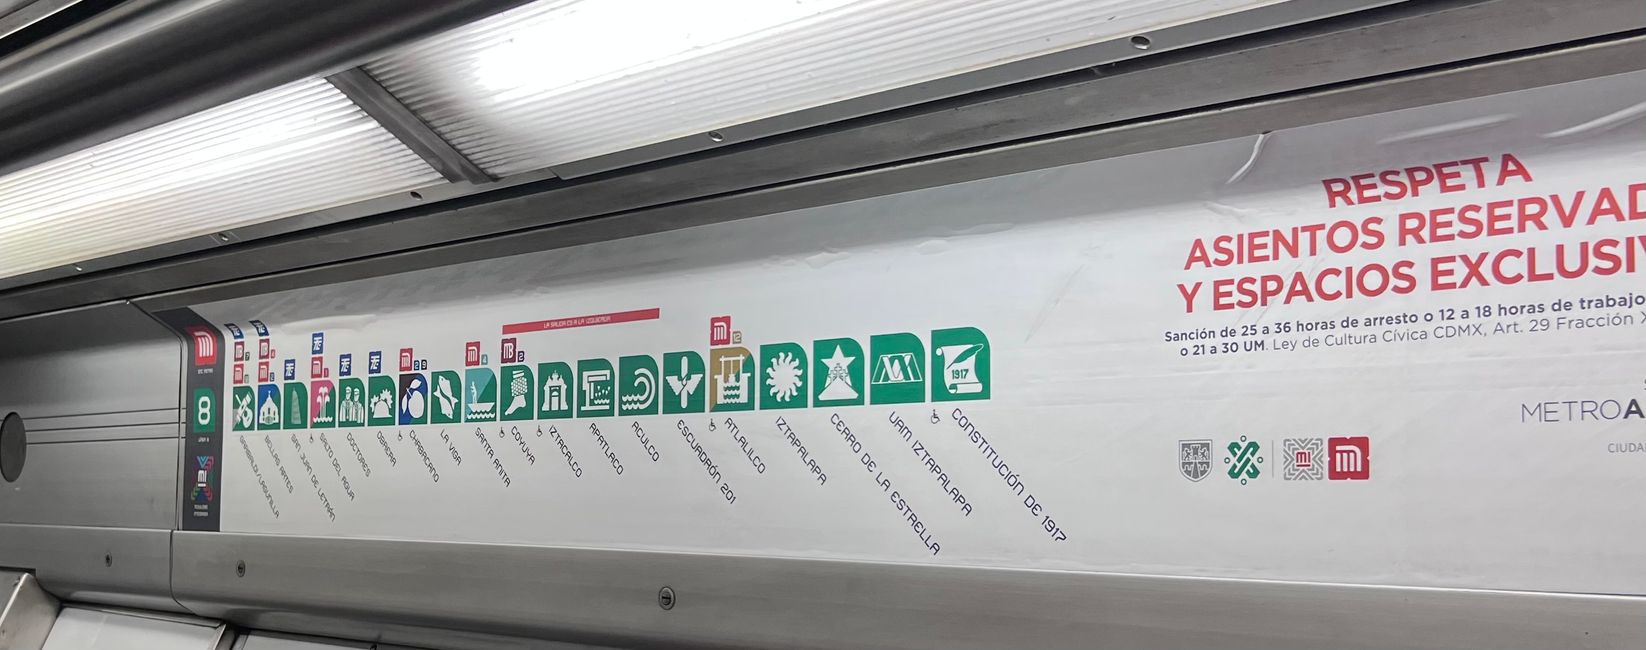 Поездка на метро в CDMX